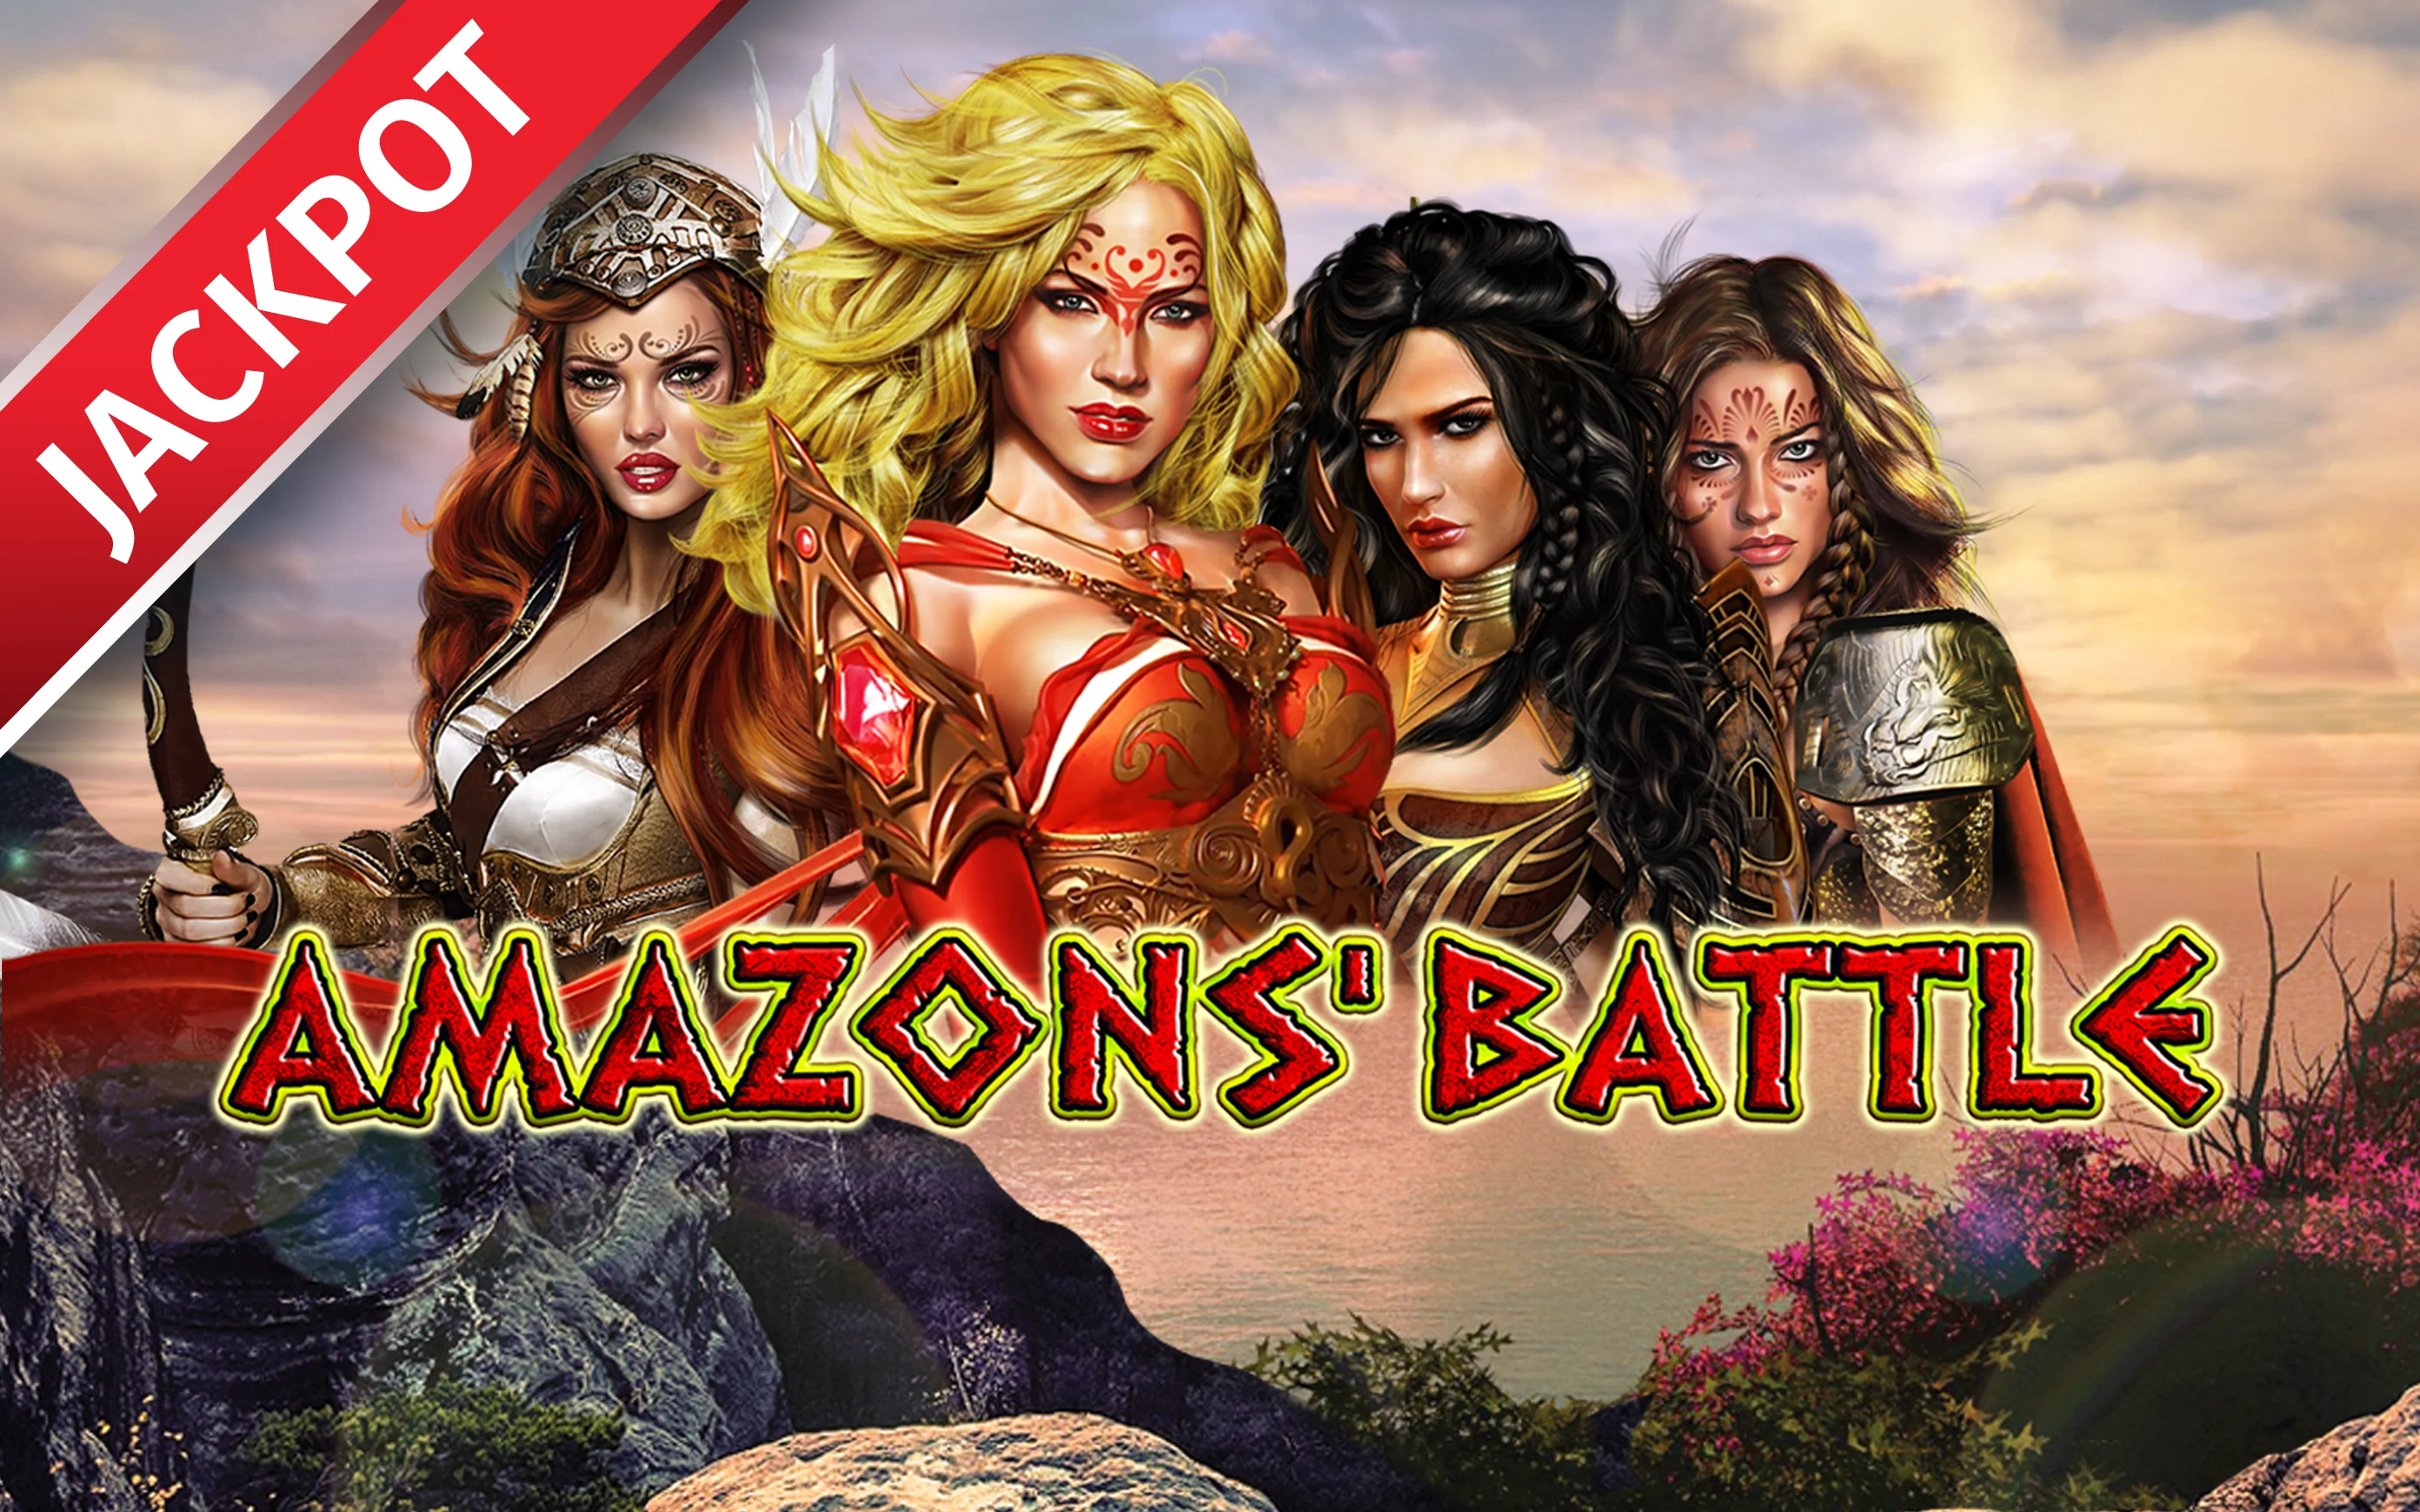 Starcasino.be online casino üzerinden Amazons Battle oynayın